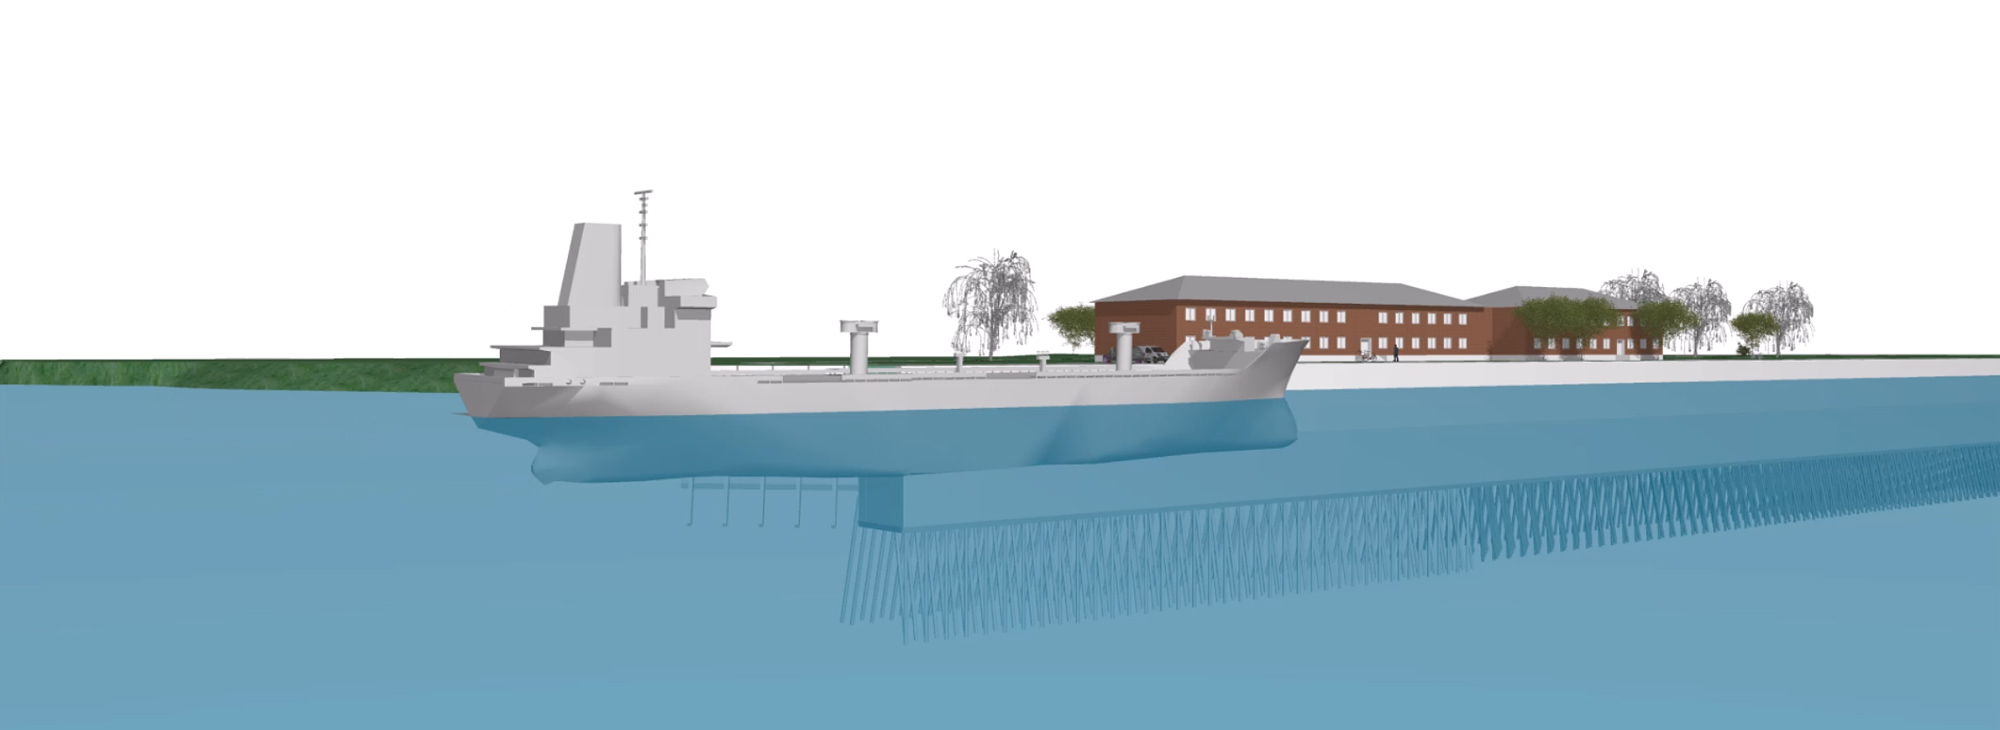 GRBV | Symposium "Stahl im Wasserbau 2023" – Visualisierung Westkaje im Marinehafen Hohe Düne in Rostock Warnemünde 